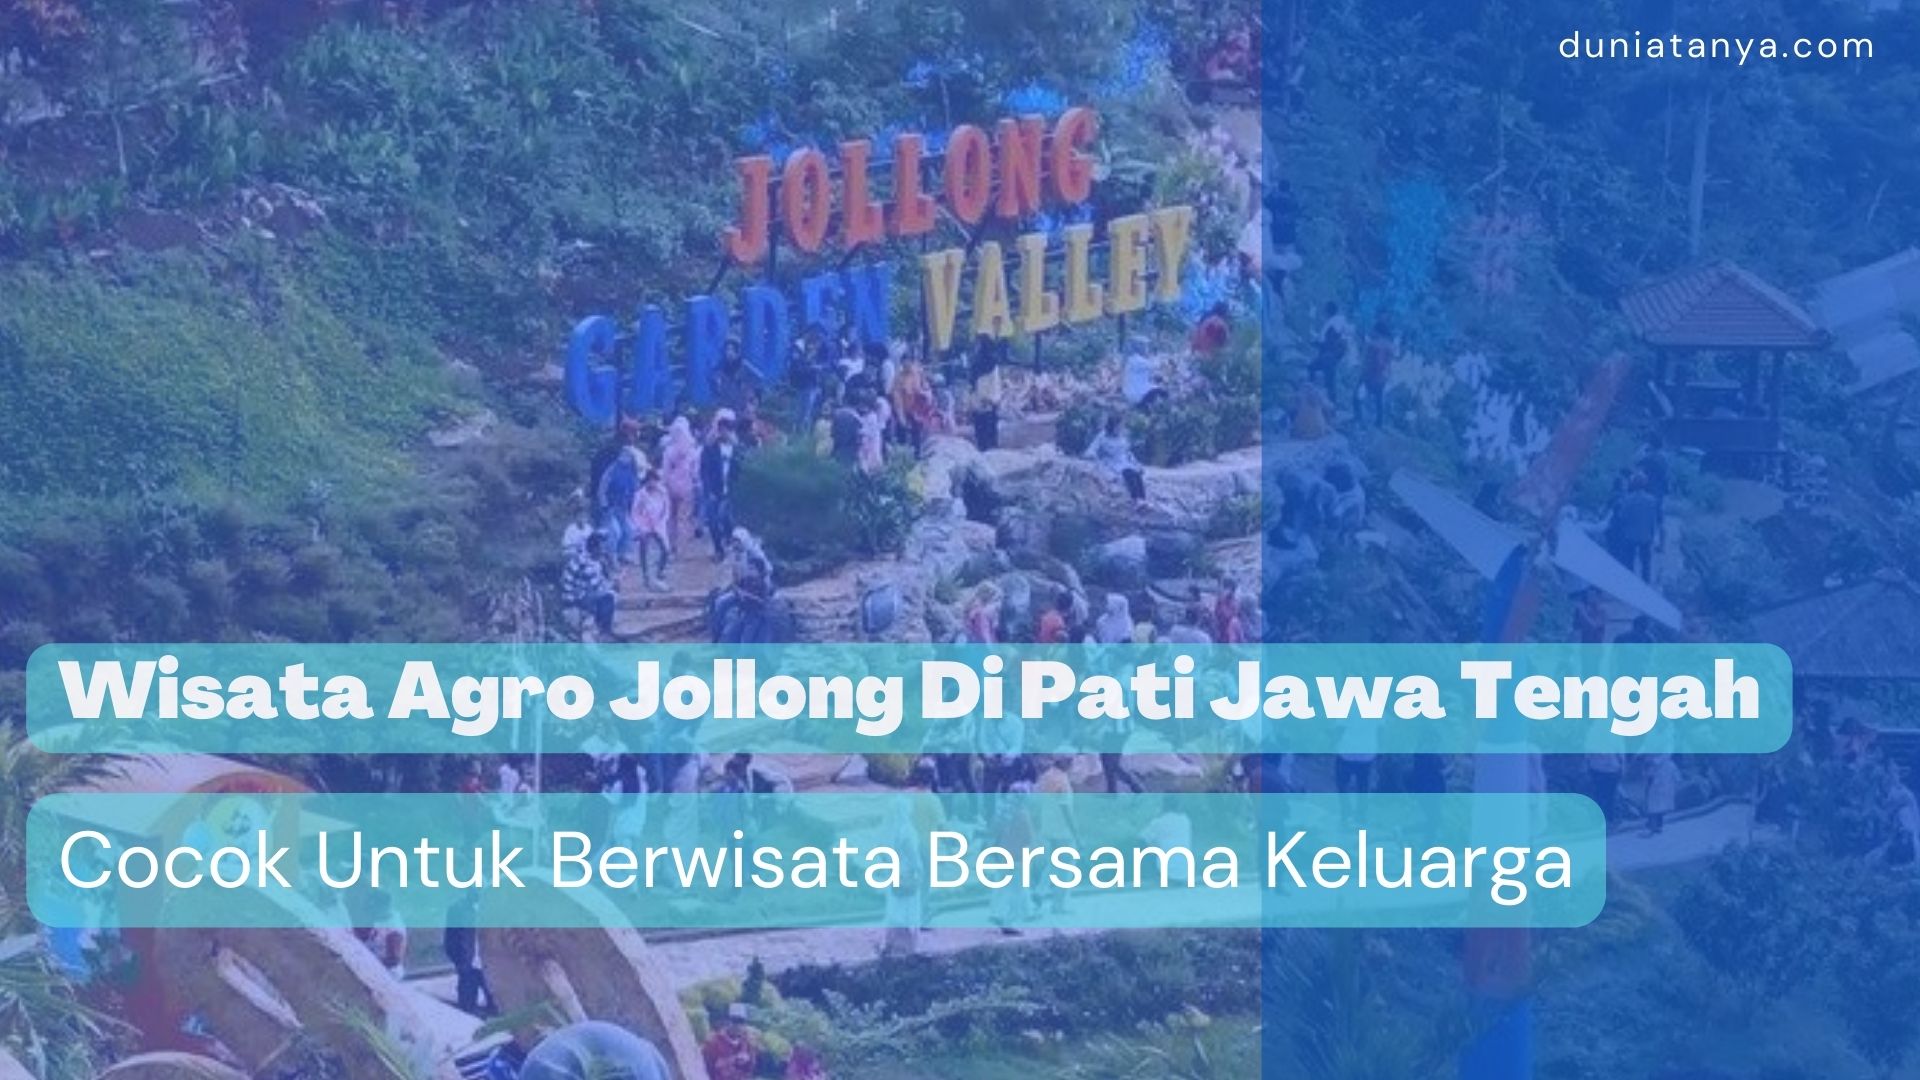 You are currently viewing Wisata Agro Jollong Di Pati Jawa Tengah,Cocok Untuk Berwisata Bersama Keluarga